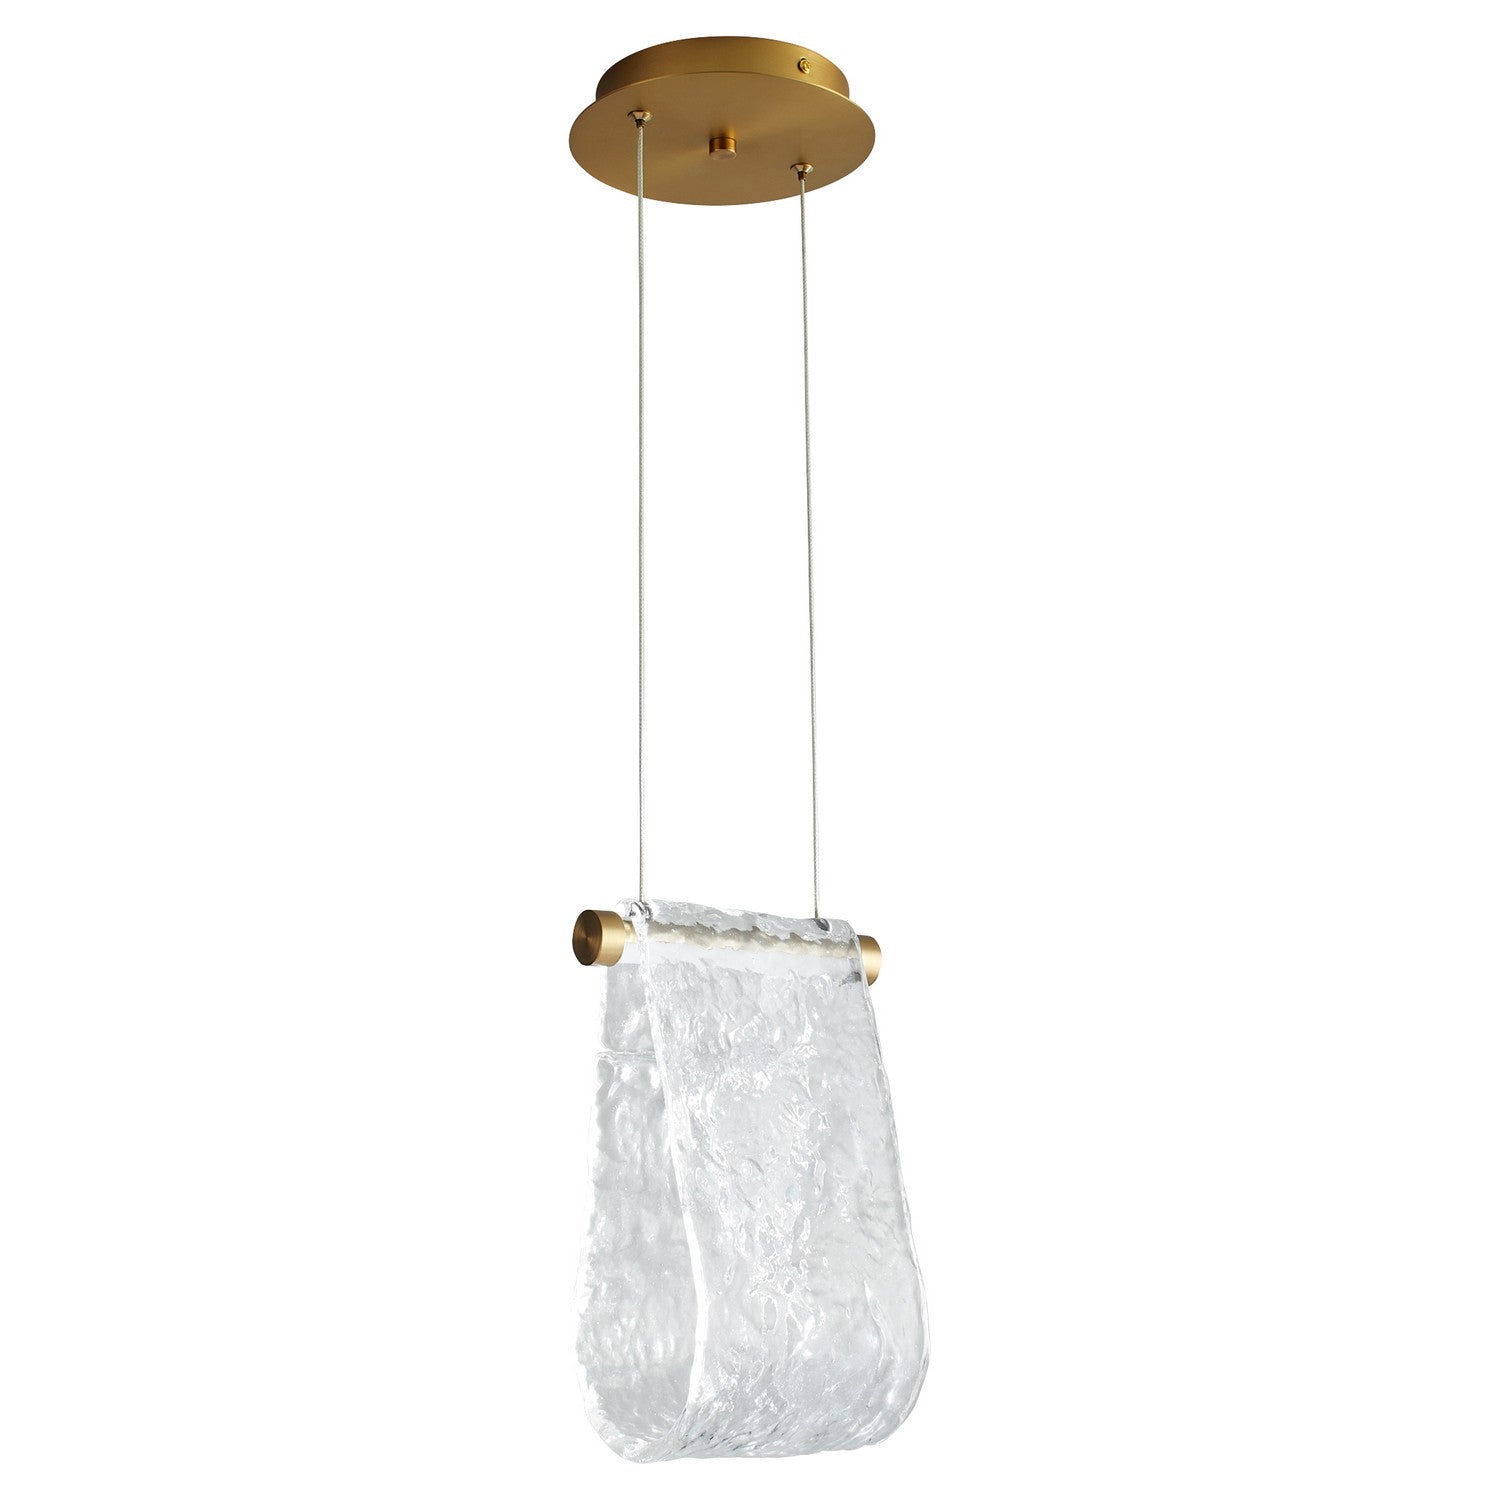 Oxygen Lighting - 3-602-40 - LED Pendant - Veer - Aged Brass